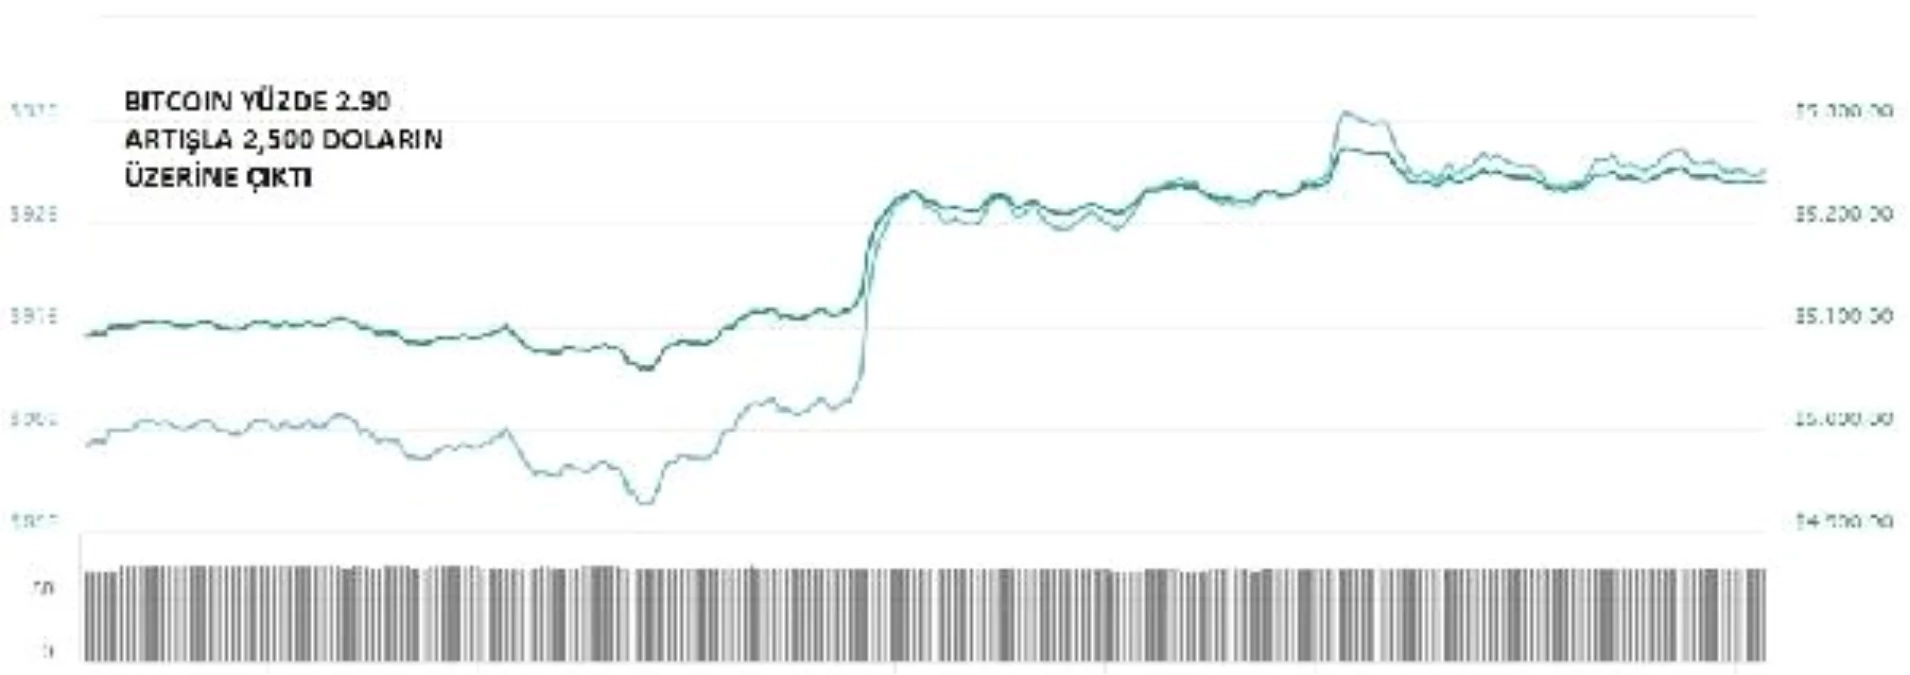 Kriptopara – Bitcoin 5,200 Doların Üzerine Çıktı